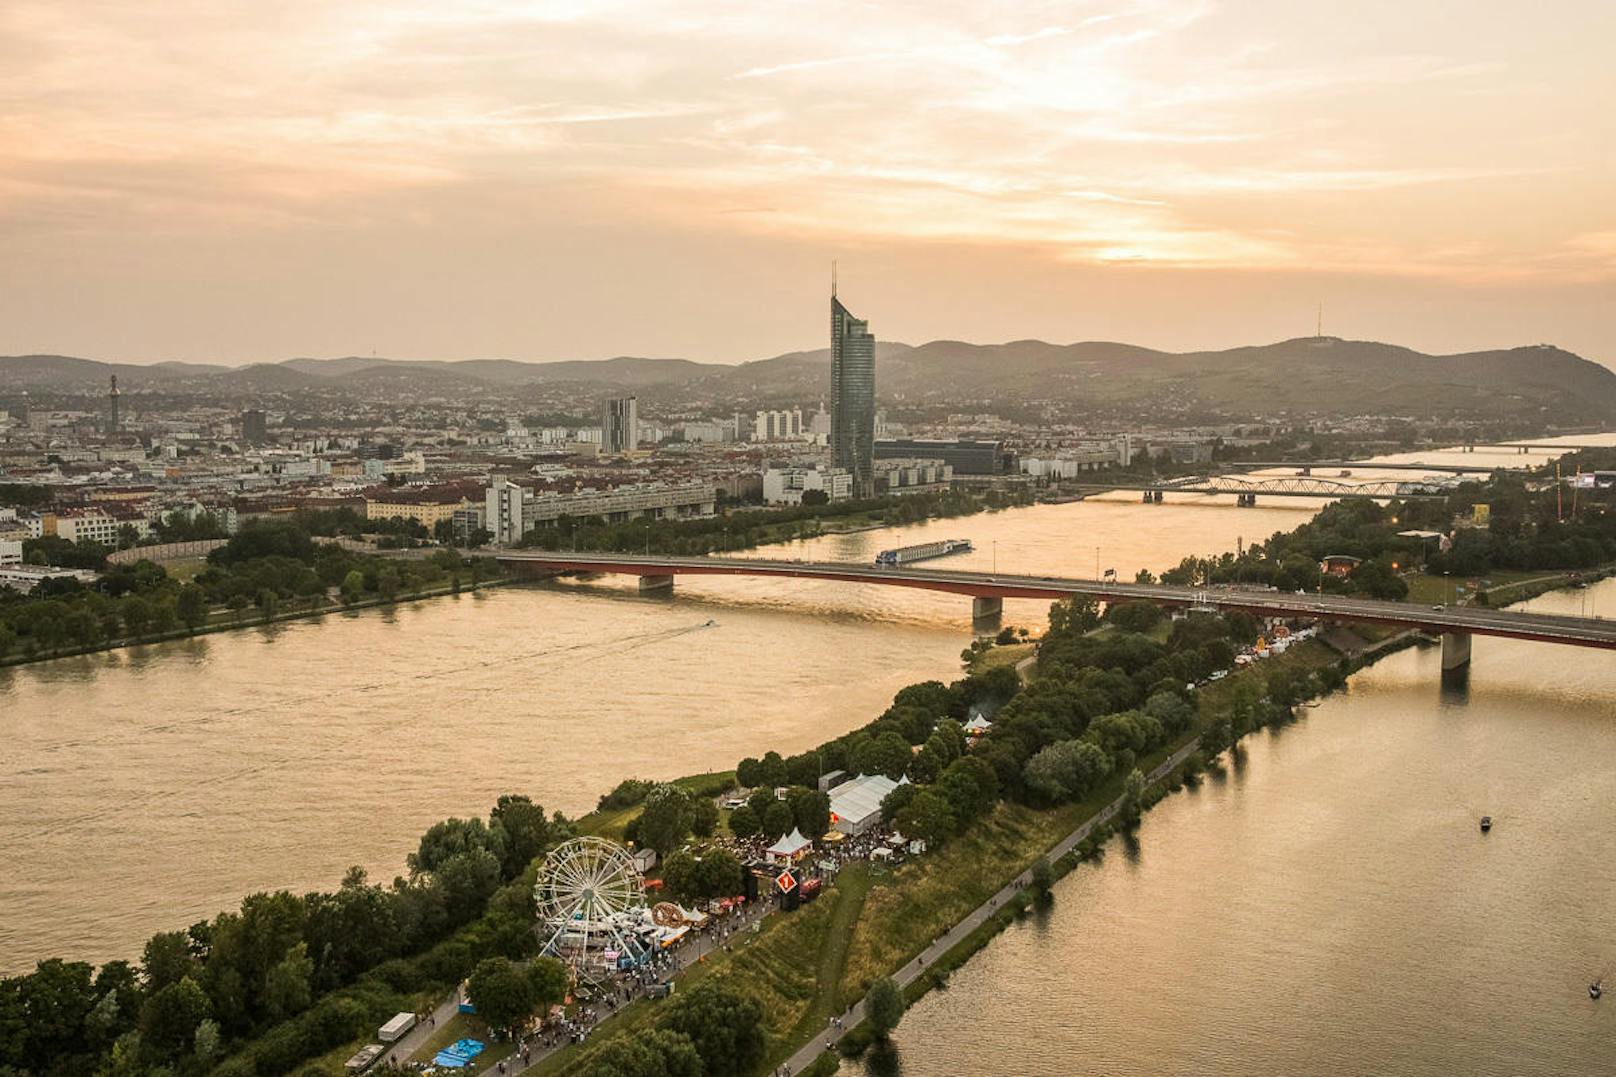 Versuchen Sie Ihr Glück und gewinnen Sie zum 34. Donauinselfest  ein VIP-Package für 2 Personen.